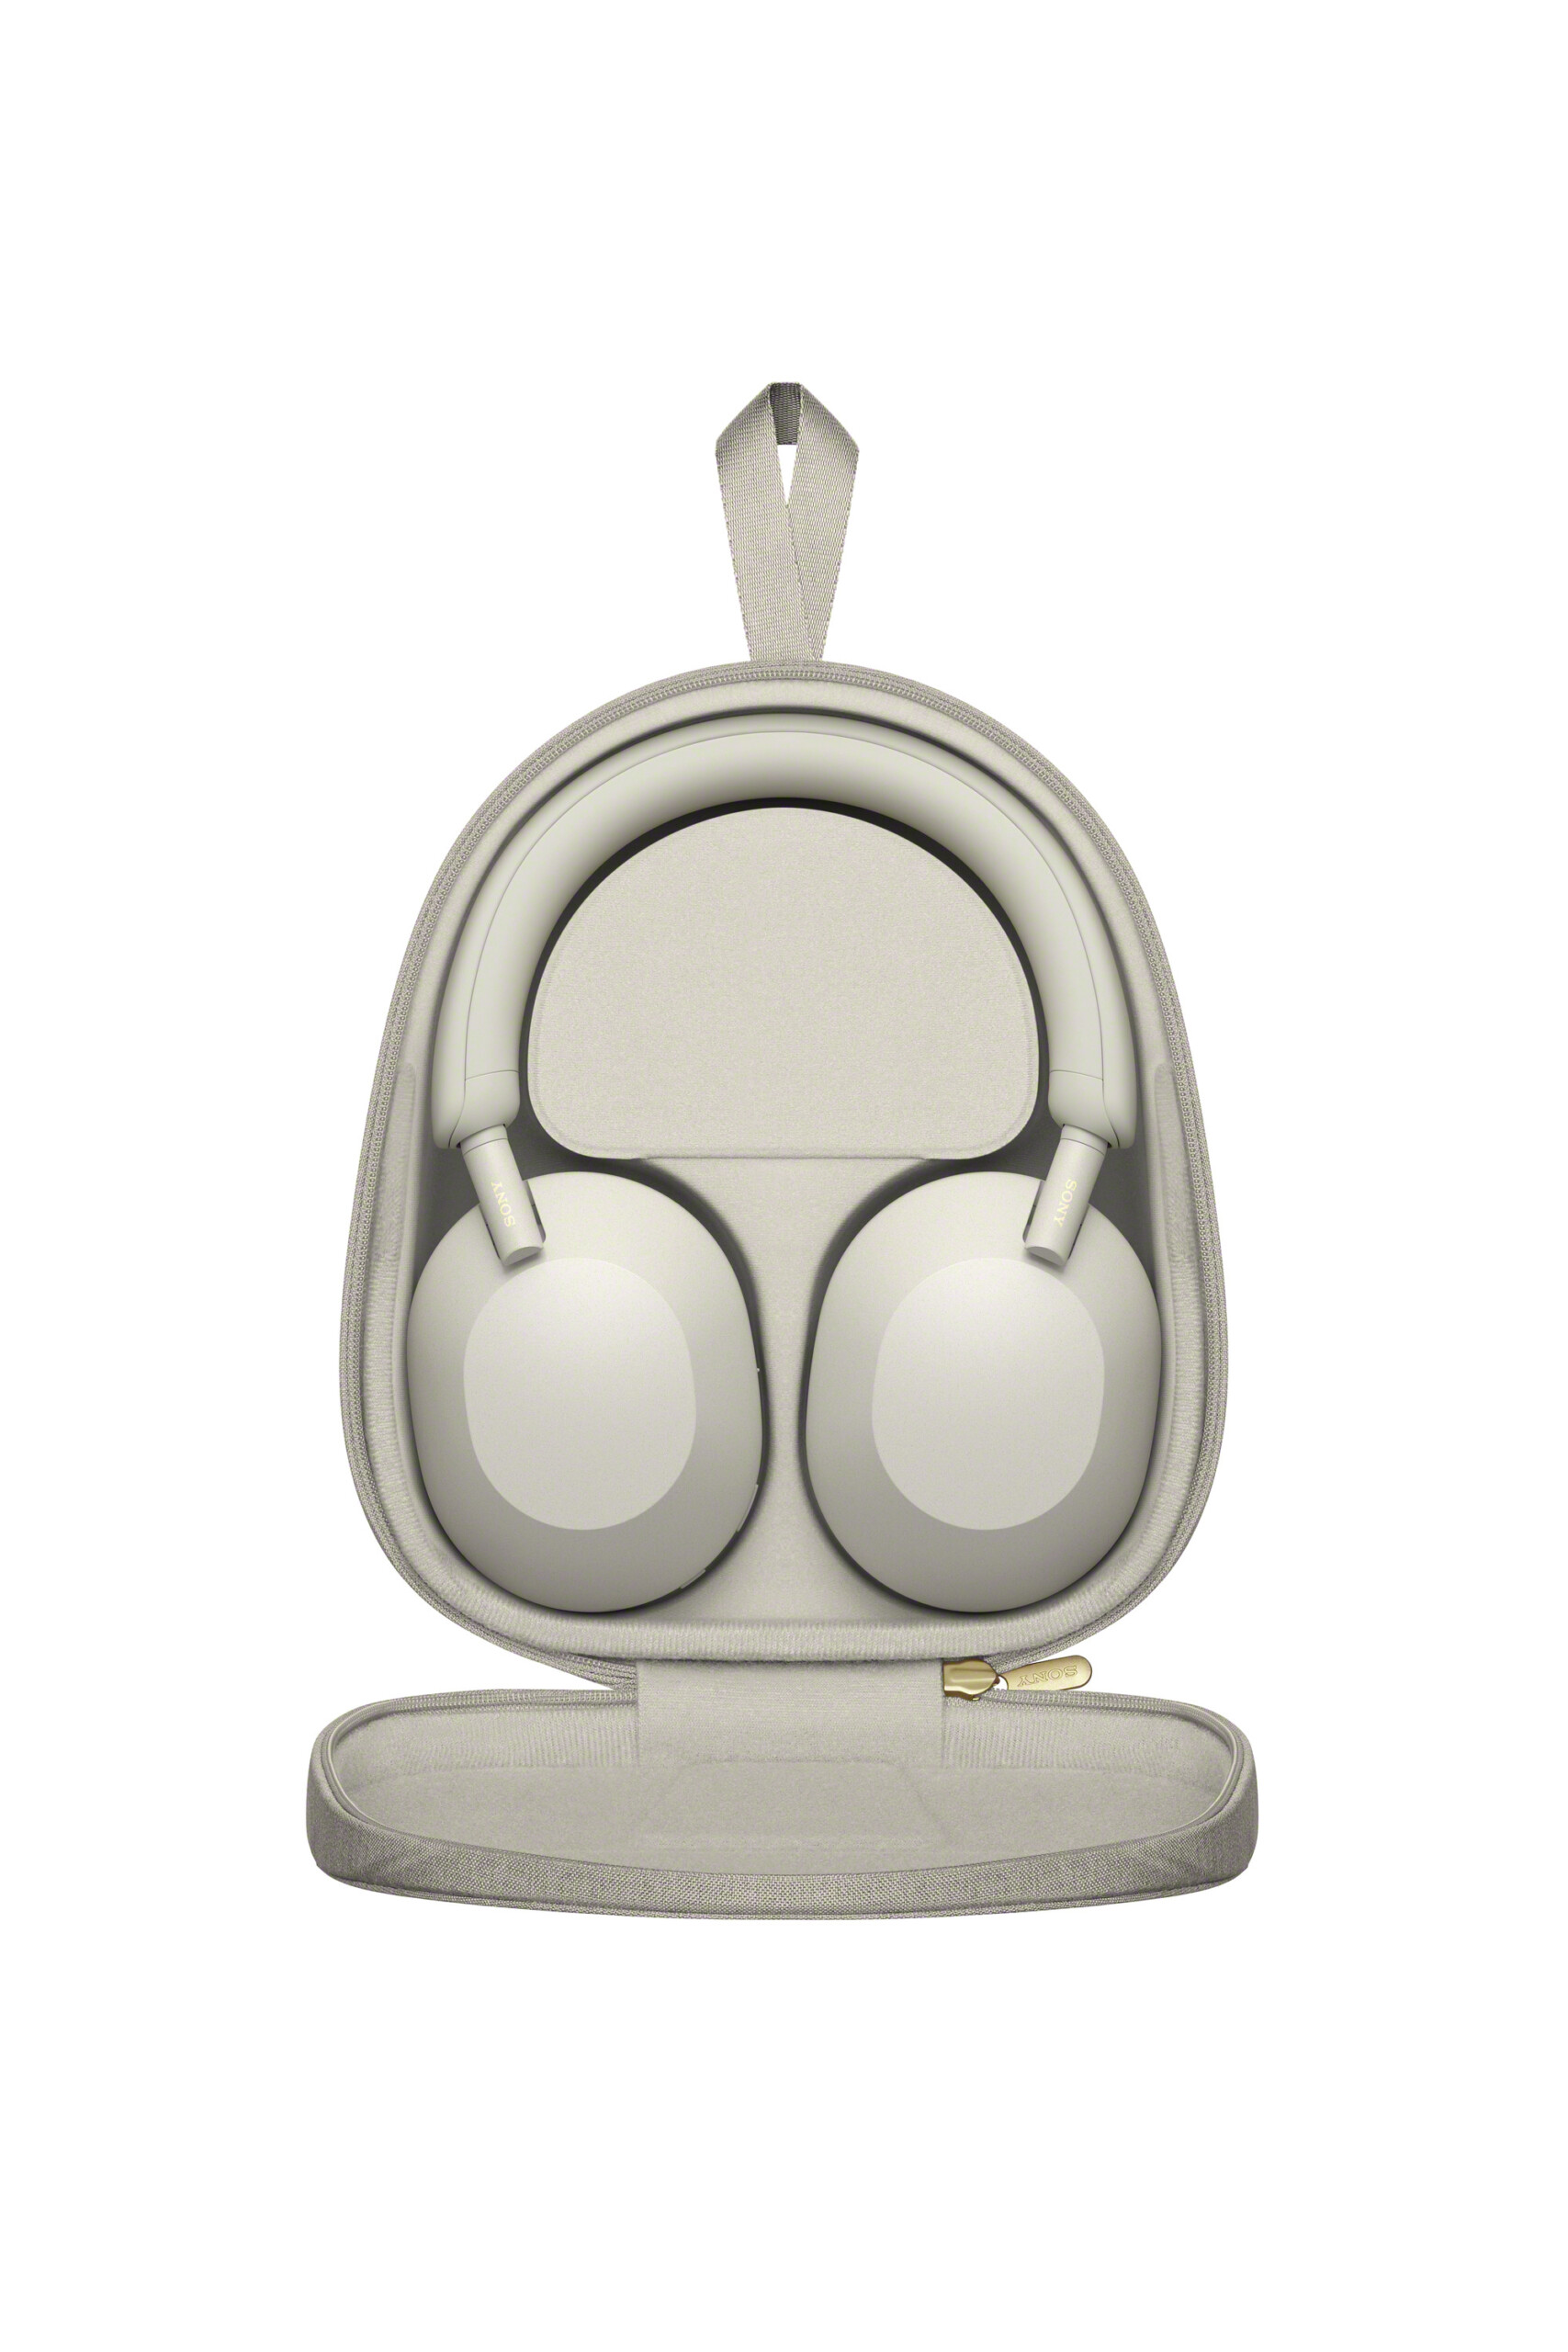 Test du casque audio WH-1000XM5 : Sony revoit son design et rend